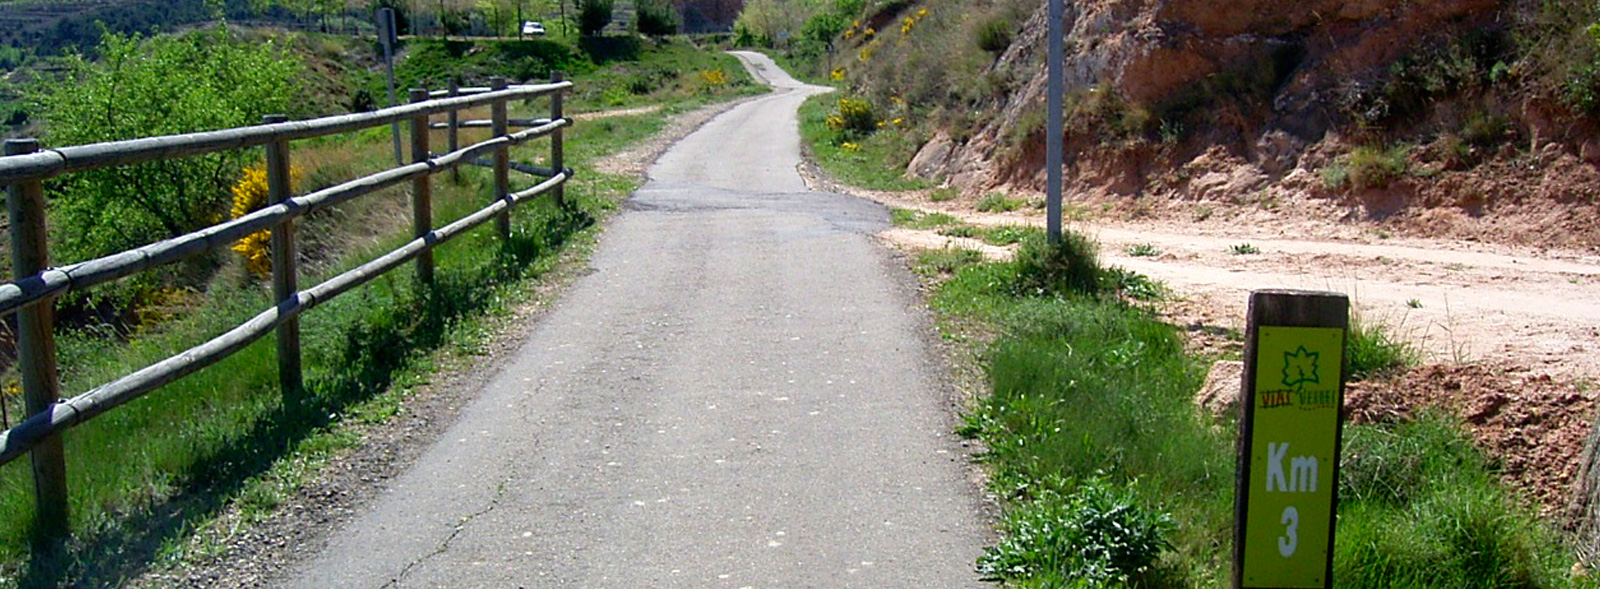 Vía Verde de Préjano - Descripción de la ruta